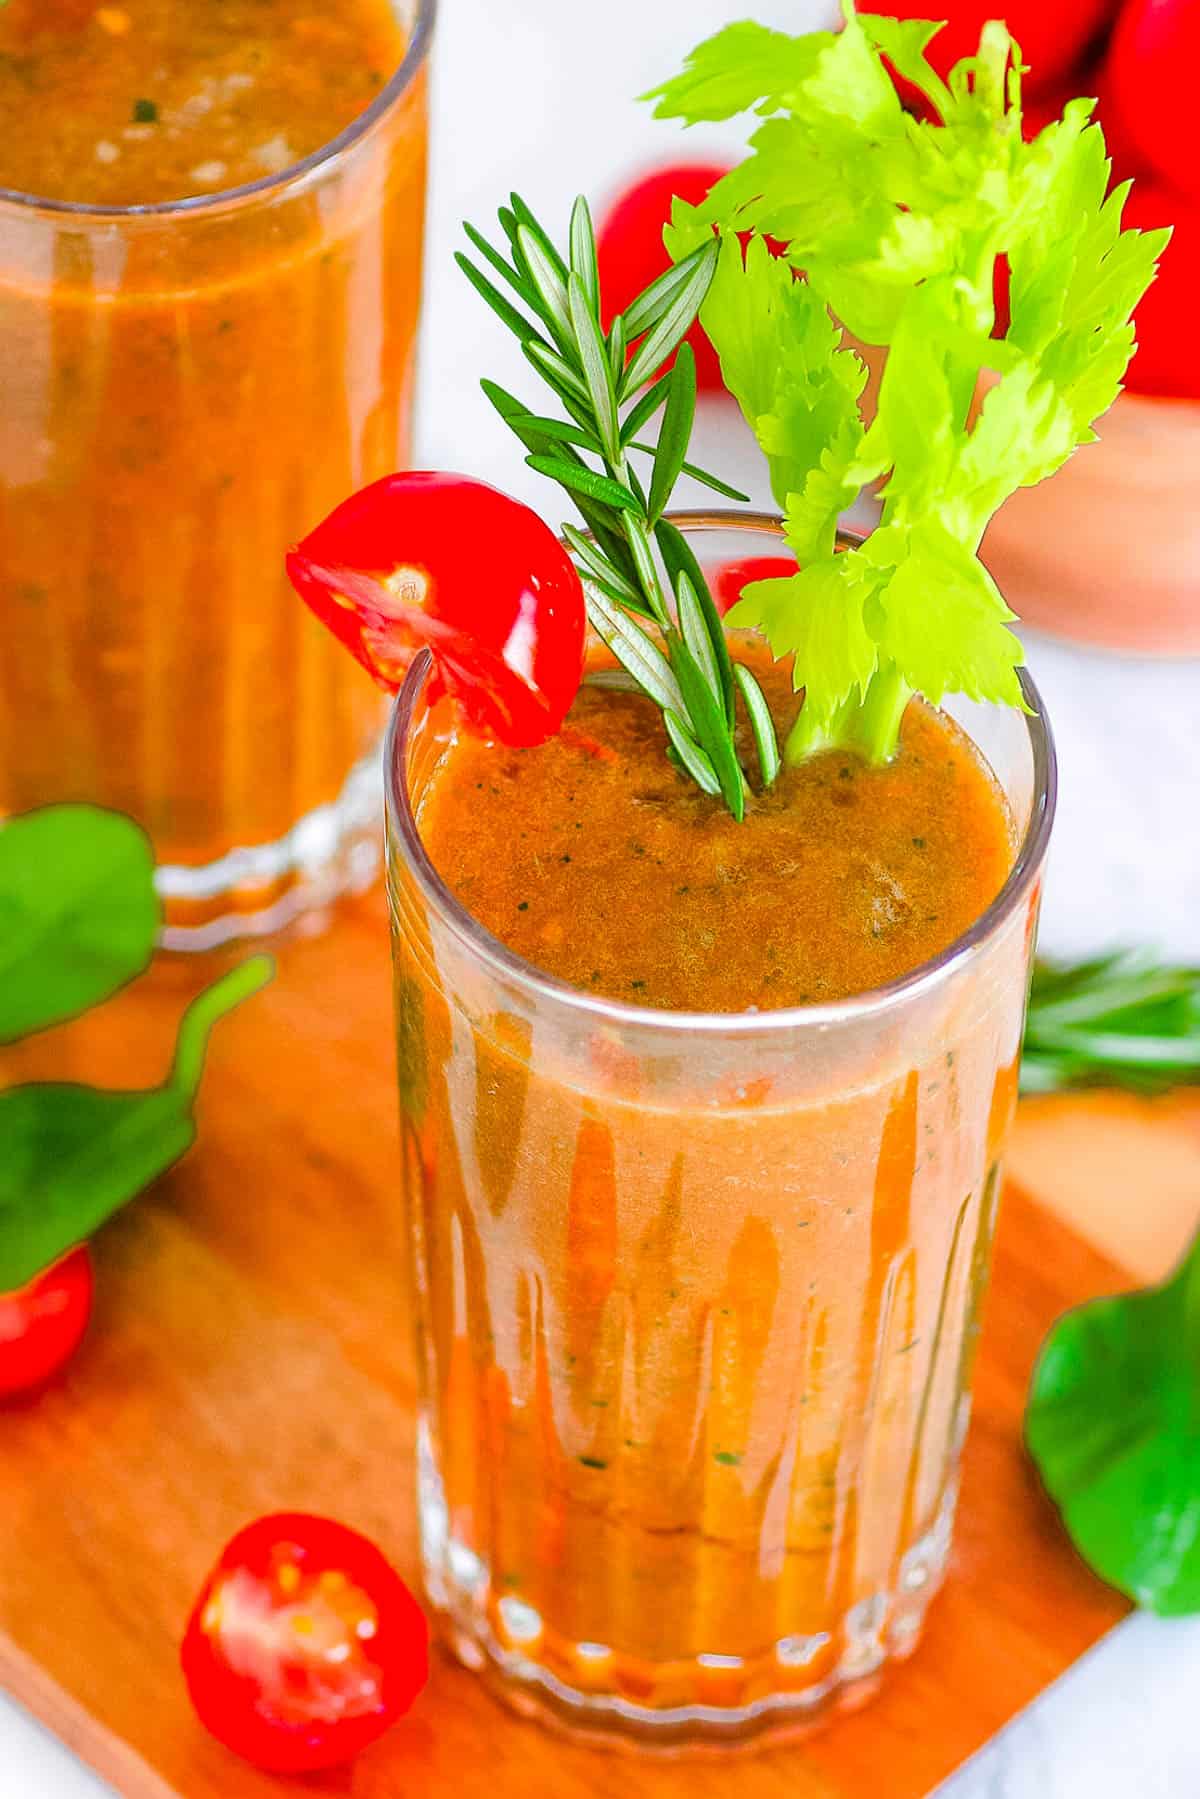 اسموتی گوجه فرنگی خوش طعم در لیو، که با کرفس و گوجه گی،ی تزئین شده است.